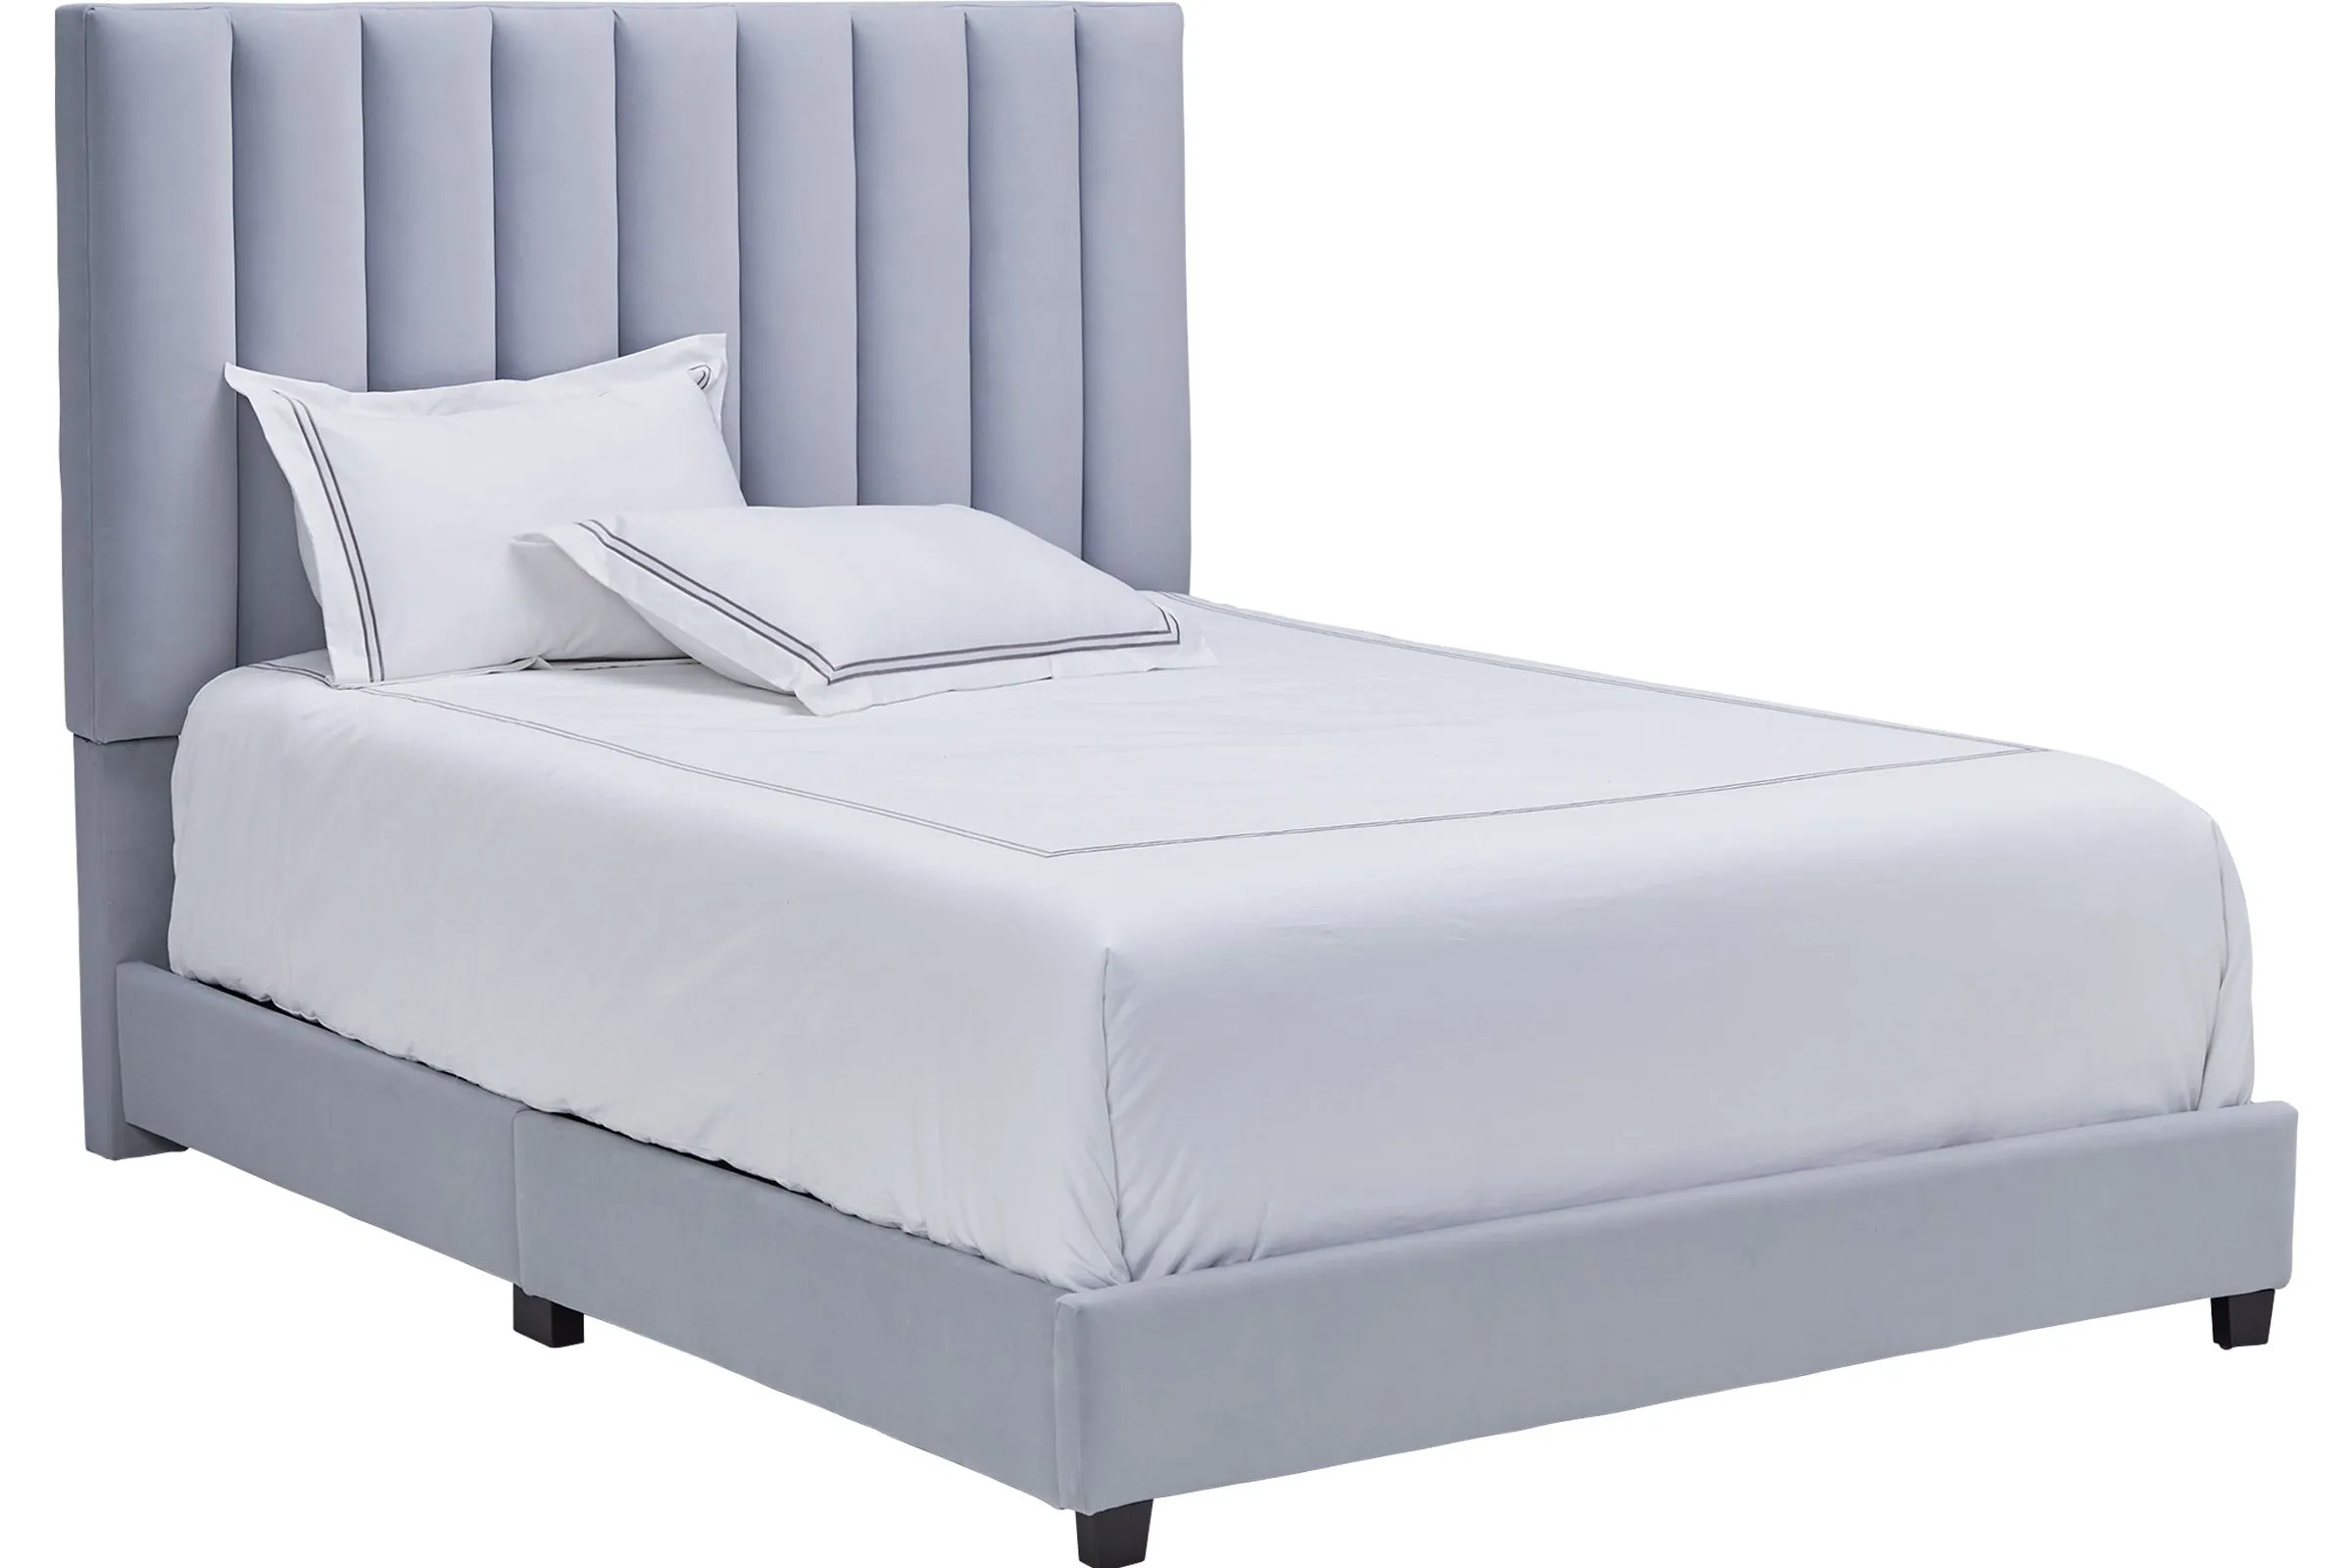 Byrnn Blue Upholstered King Bed